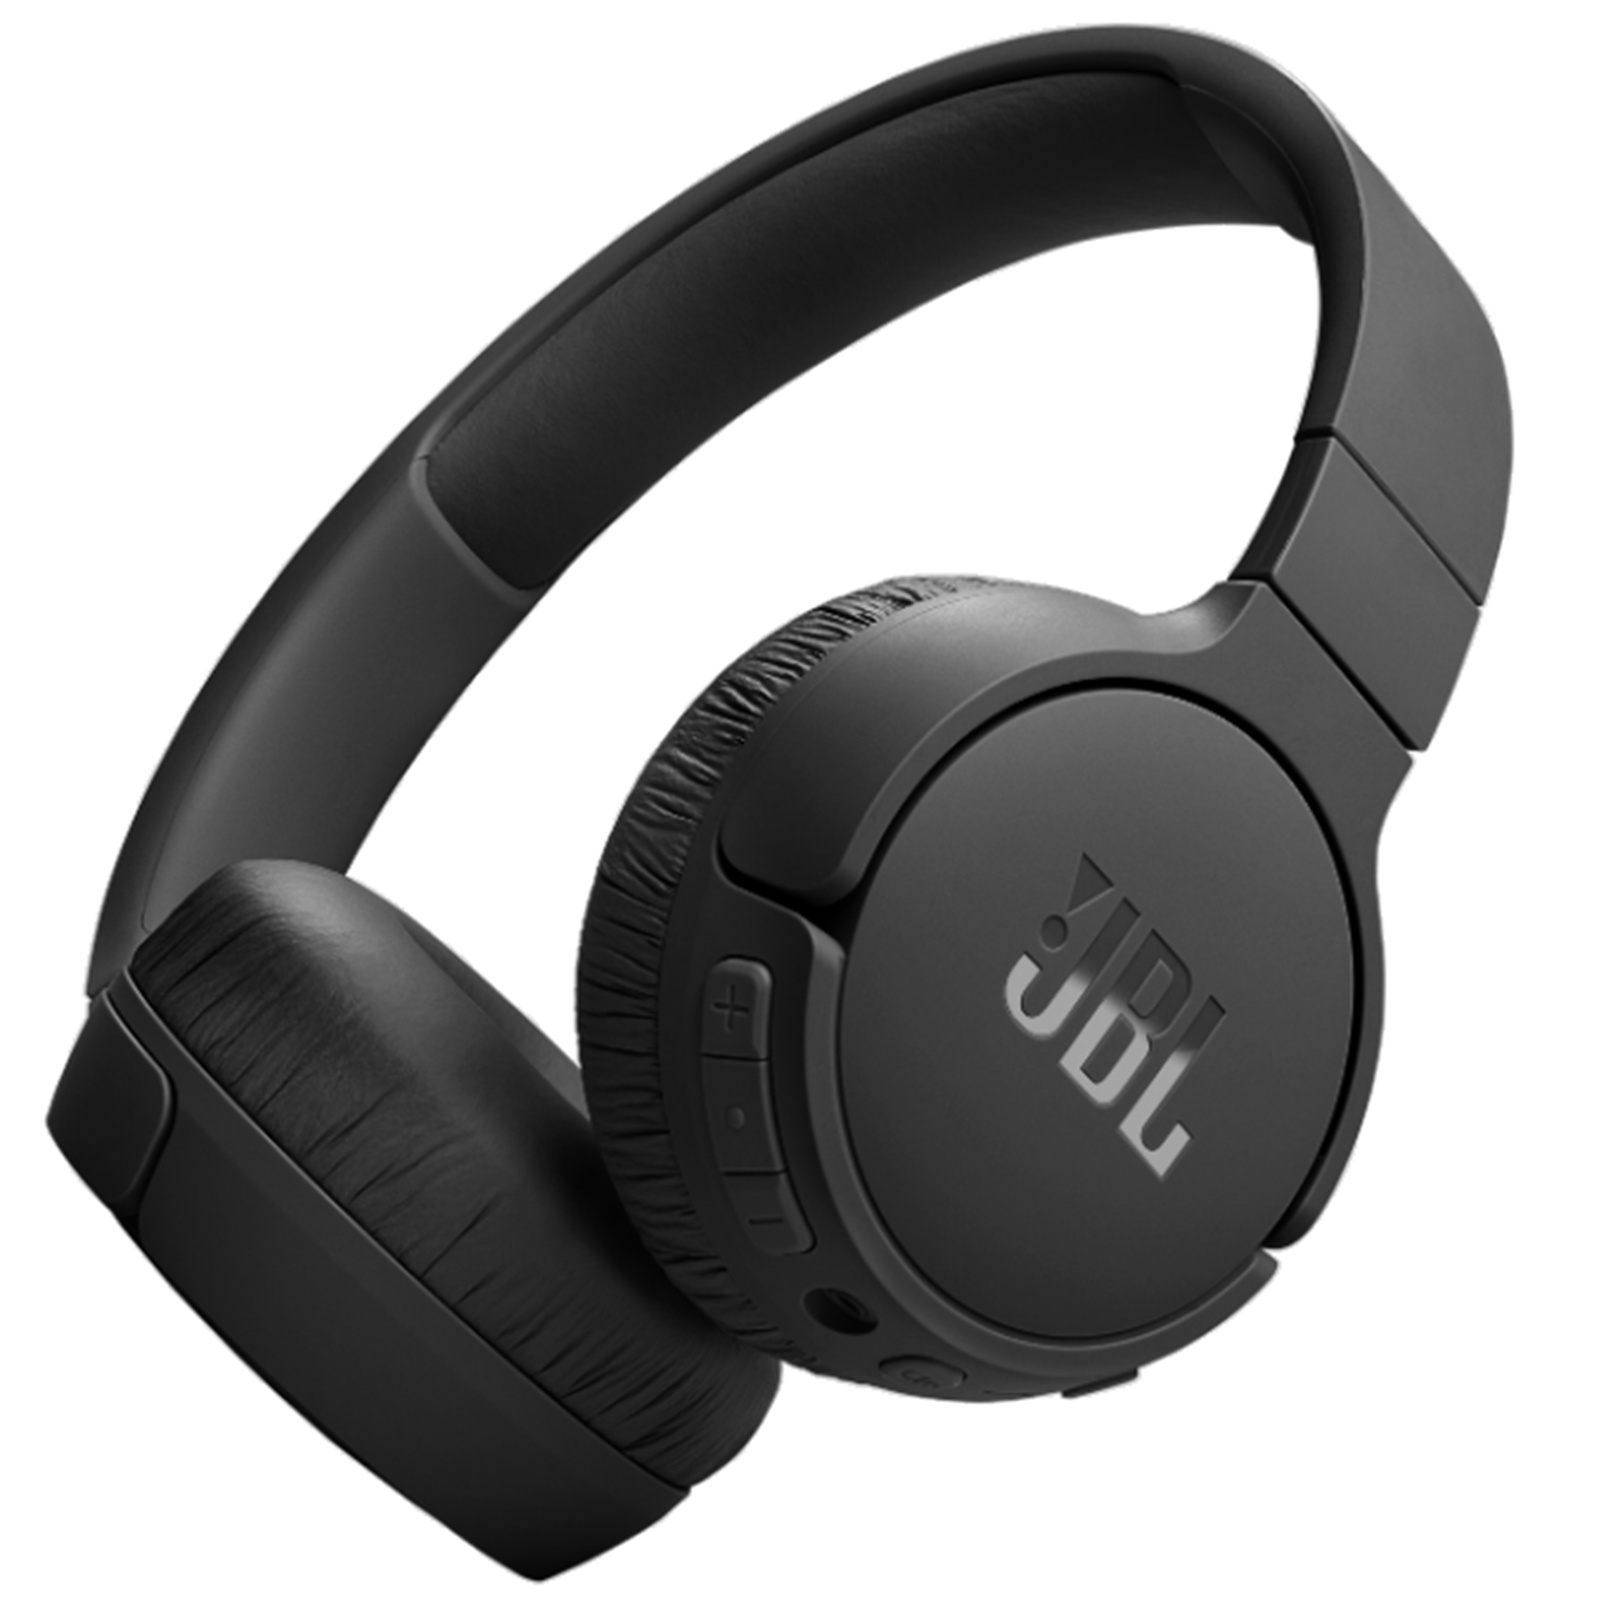 Buy the JBL Tune 670 BTNC Wireless Noise Cancelling Headphones - Black -...  ( JBLT670NCBLK ) online - PBTech.com/au